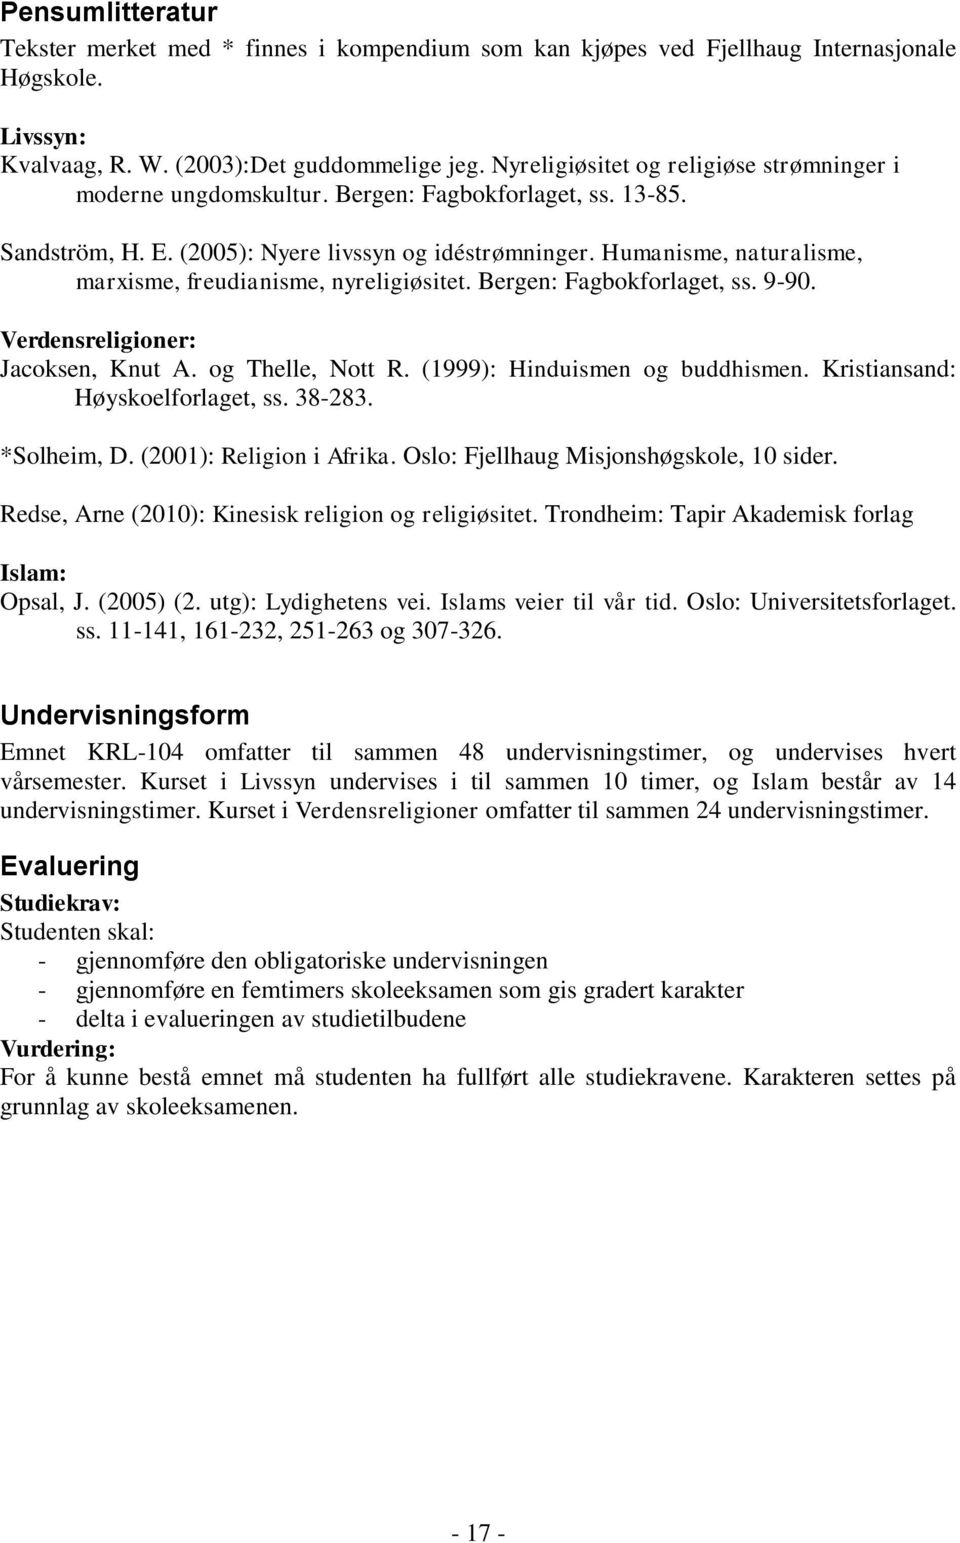 Humanisme, naturalisme, marxisme, freudianisme, nyreligiøsitet. Bergen: Fagbokforlaget, ss. 9-90. Verdensreligioner: Jacoksen, Knut A. og Thelle, Nott R. (1999): Hinduismen og buddhismen.